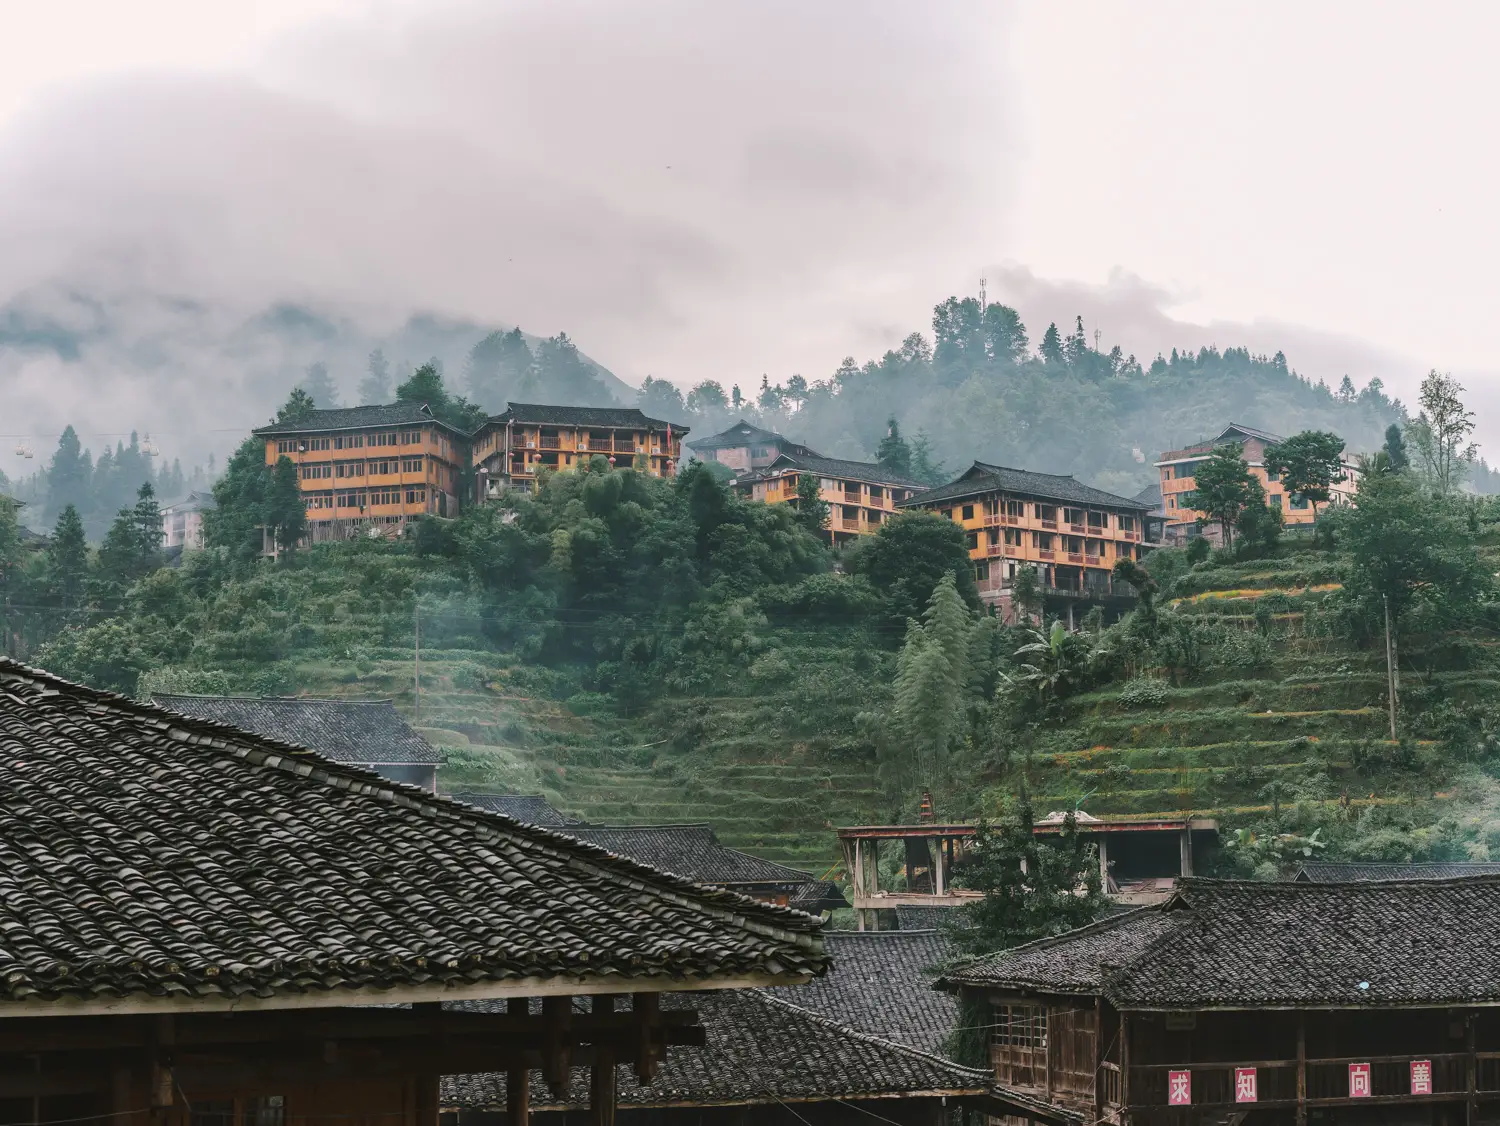 Dazhai Village